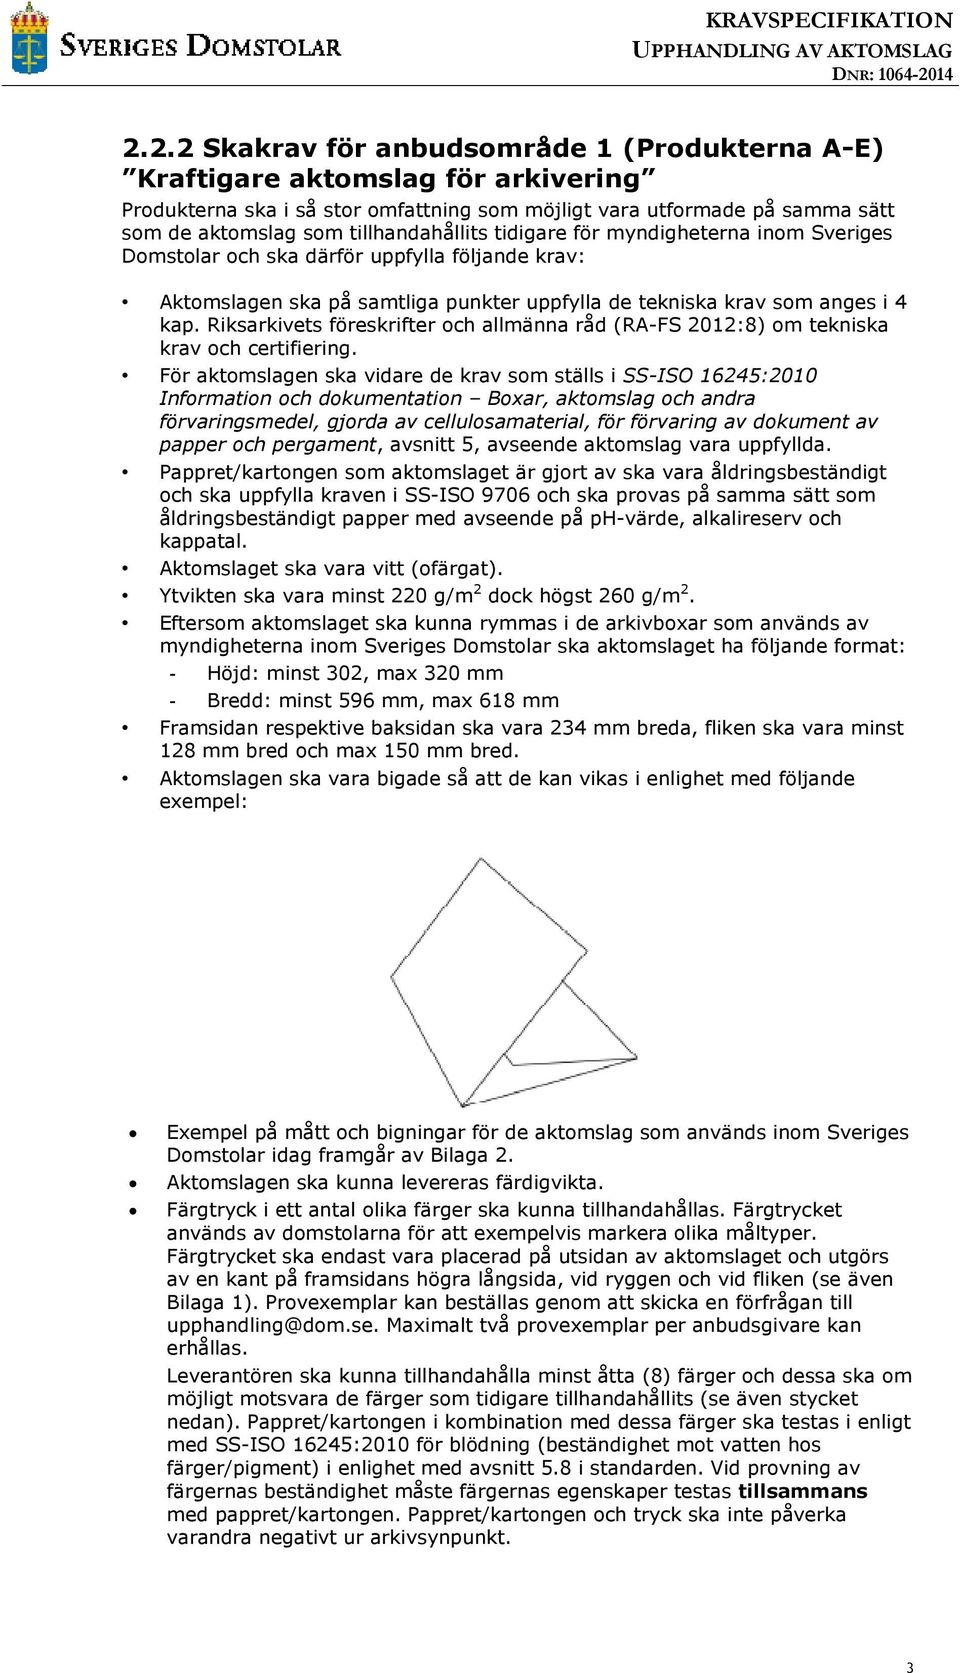 Riksarkivets föreskrifter och allmänna råd (RA-FS 2012:8) om tekniska krav och certifiering.